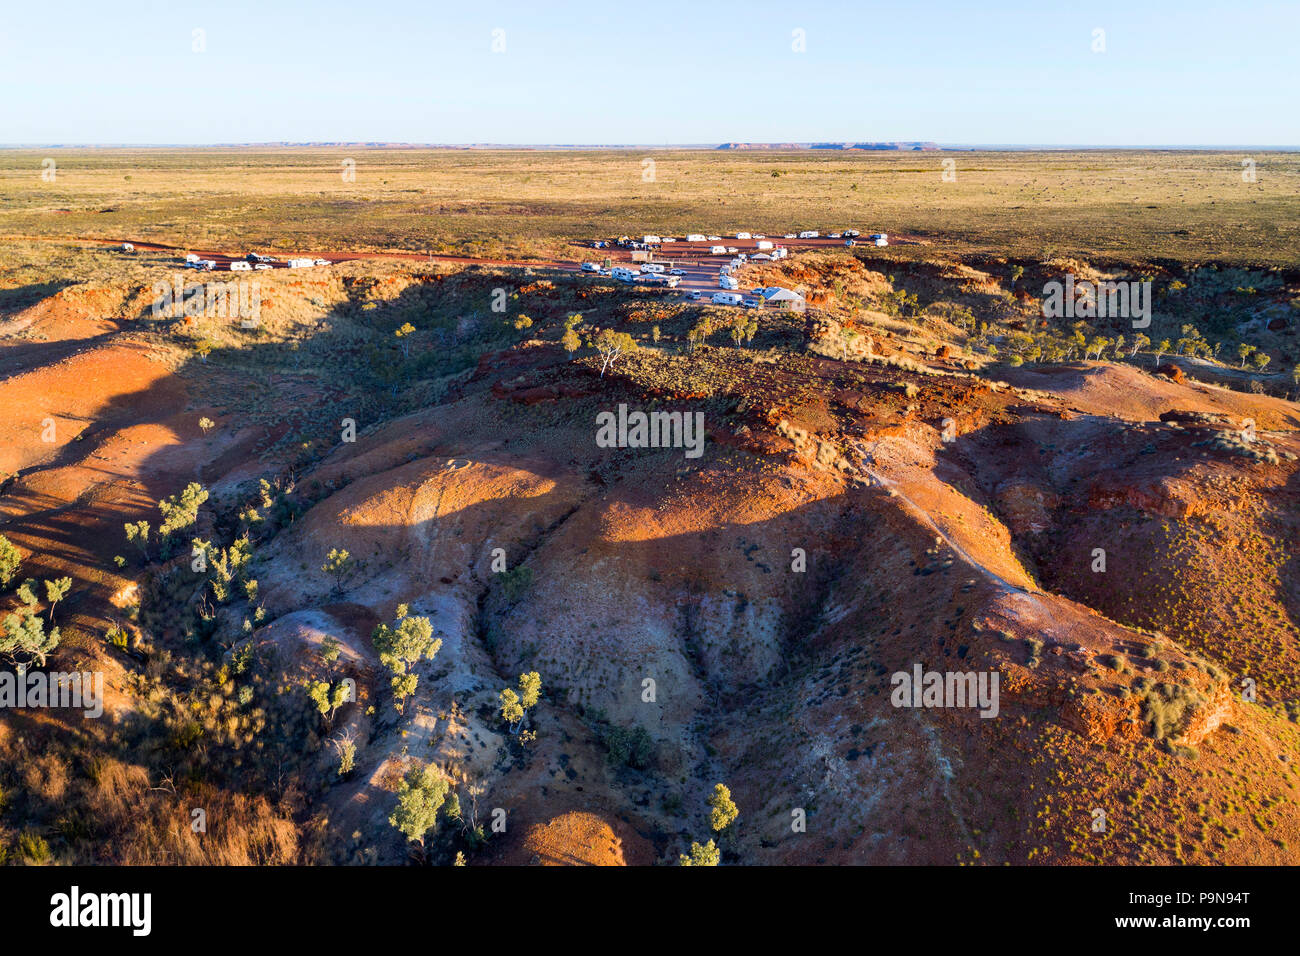 Luftaufnahme von Caravan camping Bereich im australischen Outback, Kimberley, Nordwesten Australien Stockfoto